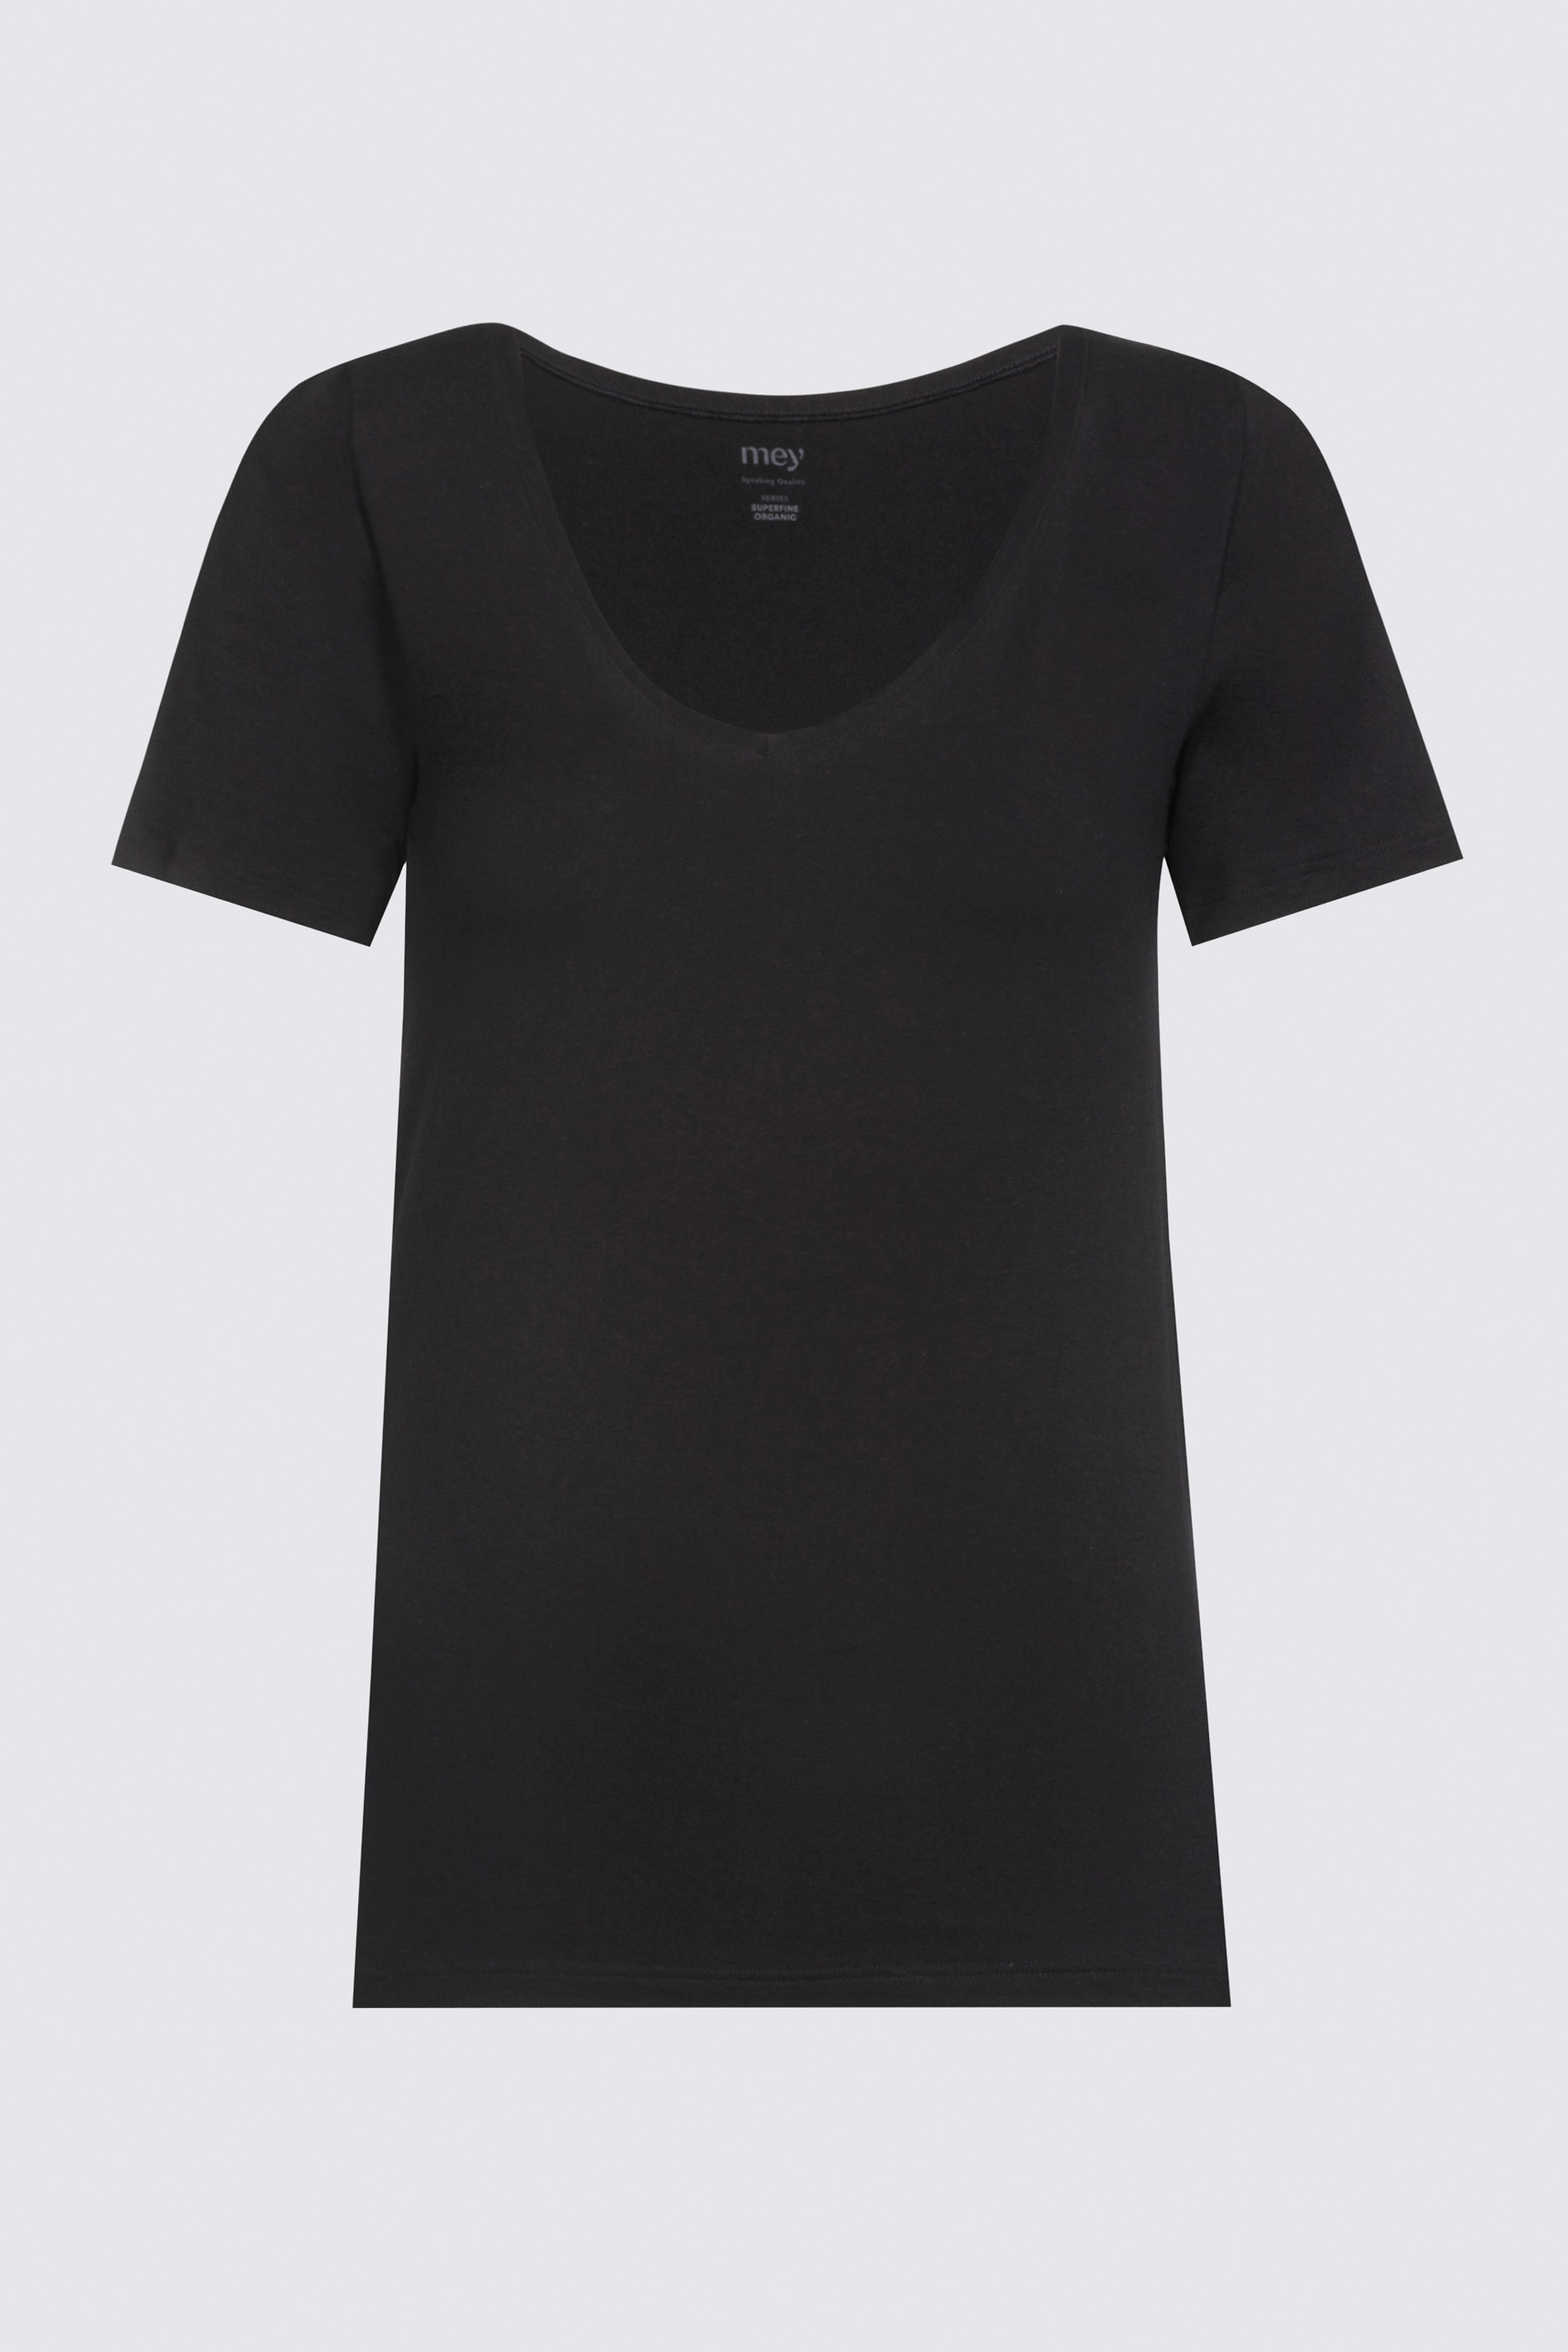 Shirt Zwart Serie Superfine Organic Uitknippen | mey®